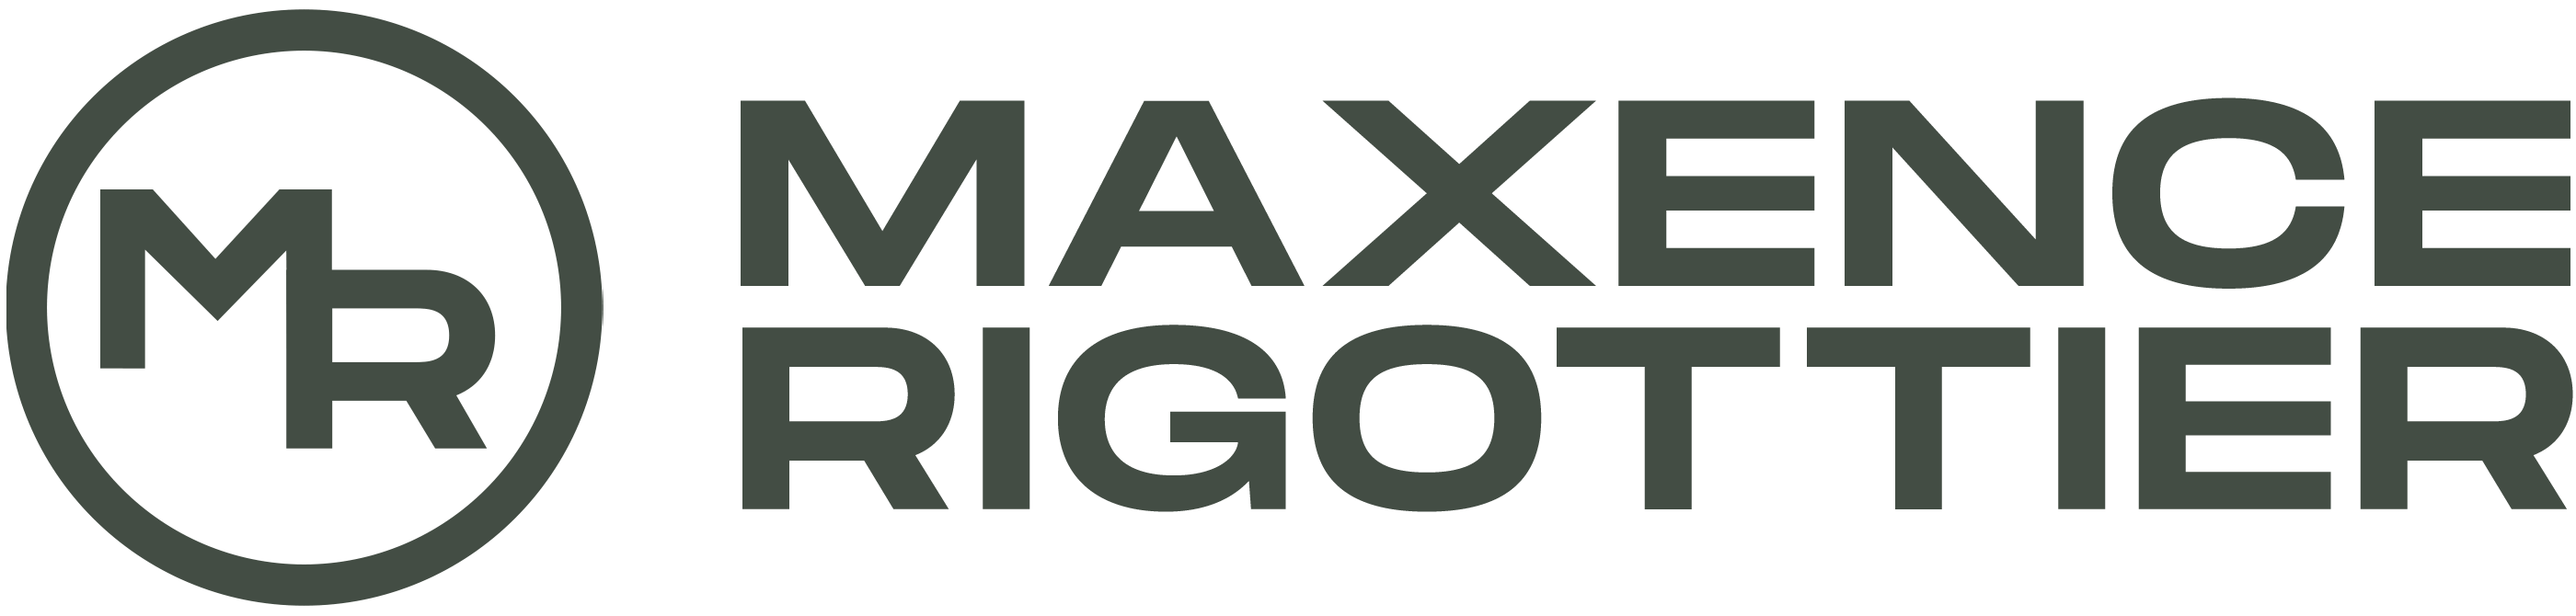 Logo Maxence RIGOTTIER